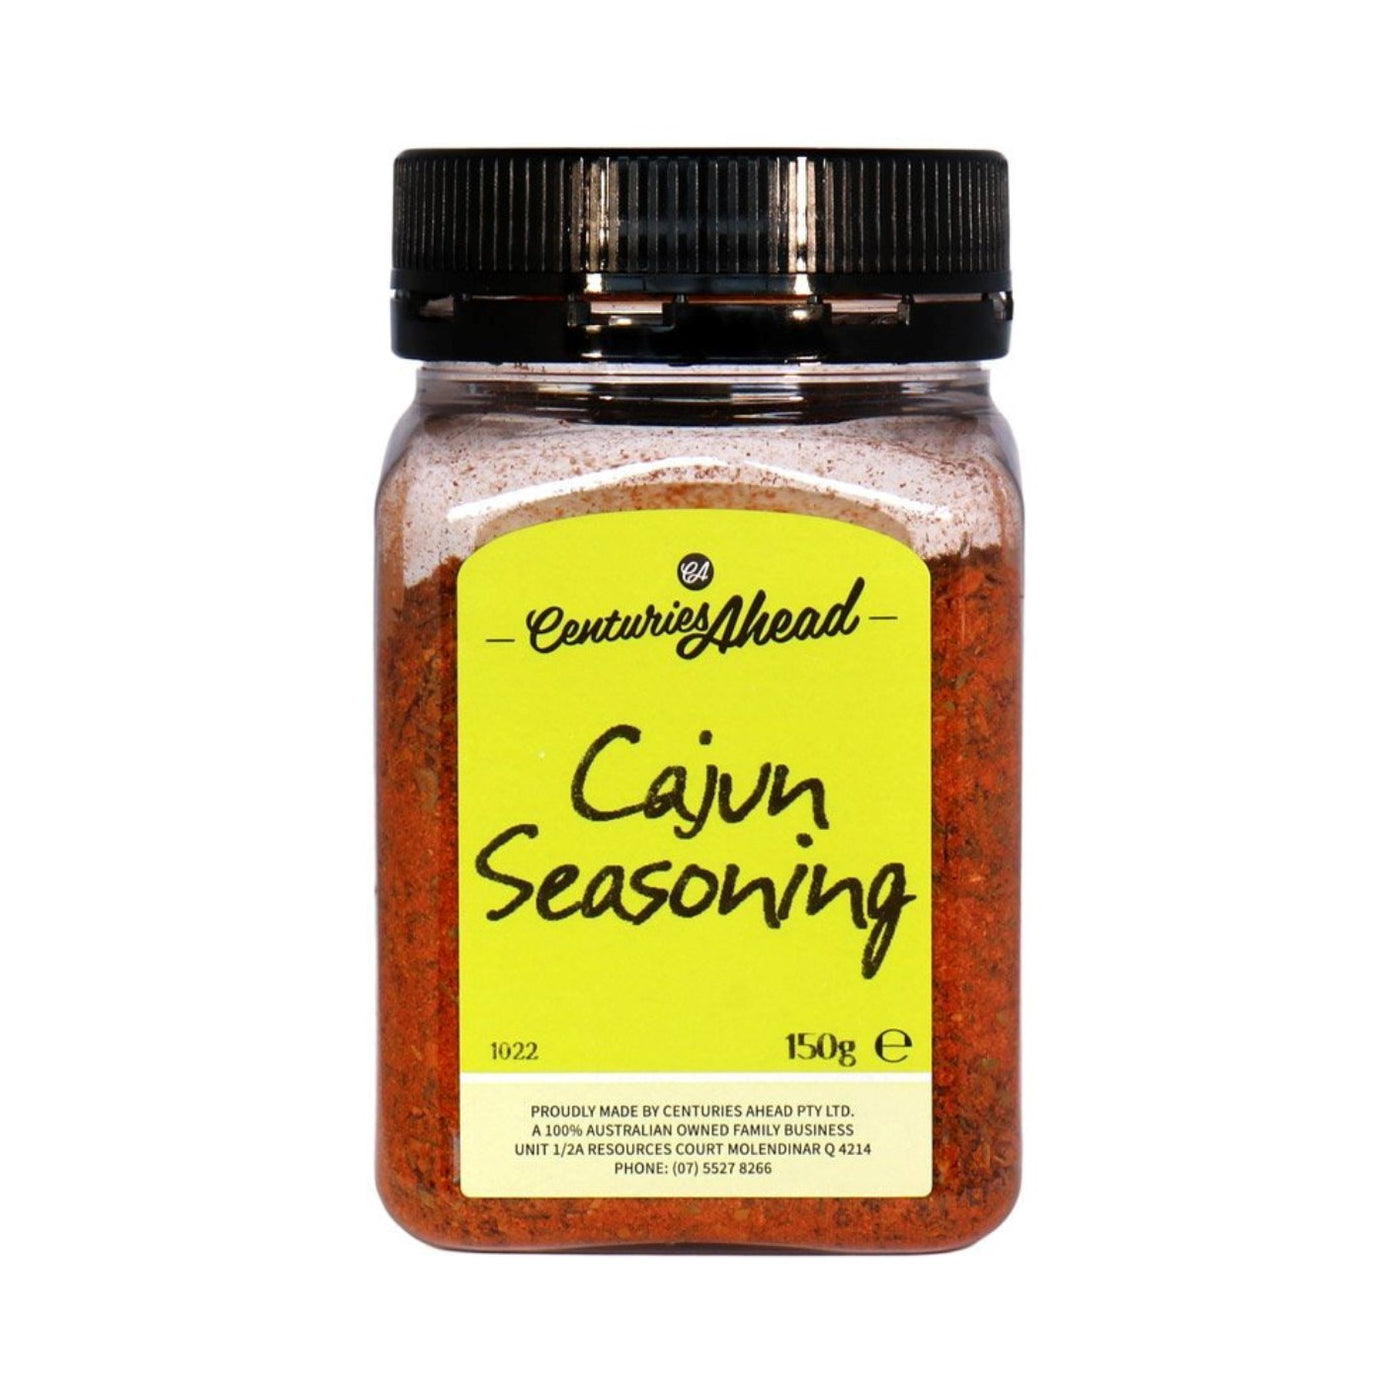 Centuries Ahead Cajun Seasoning 150g